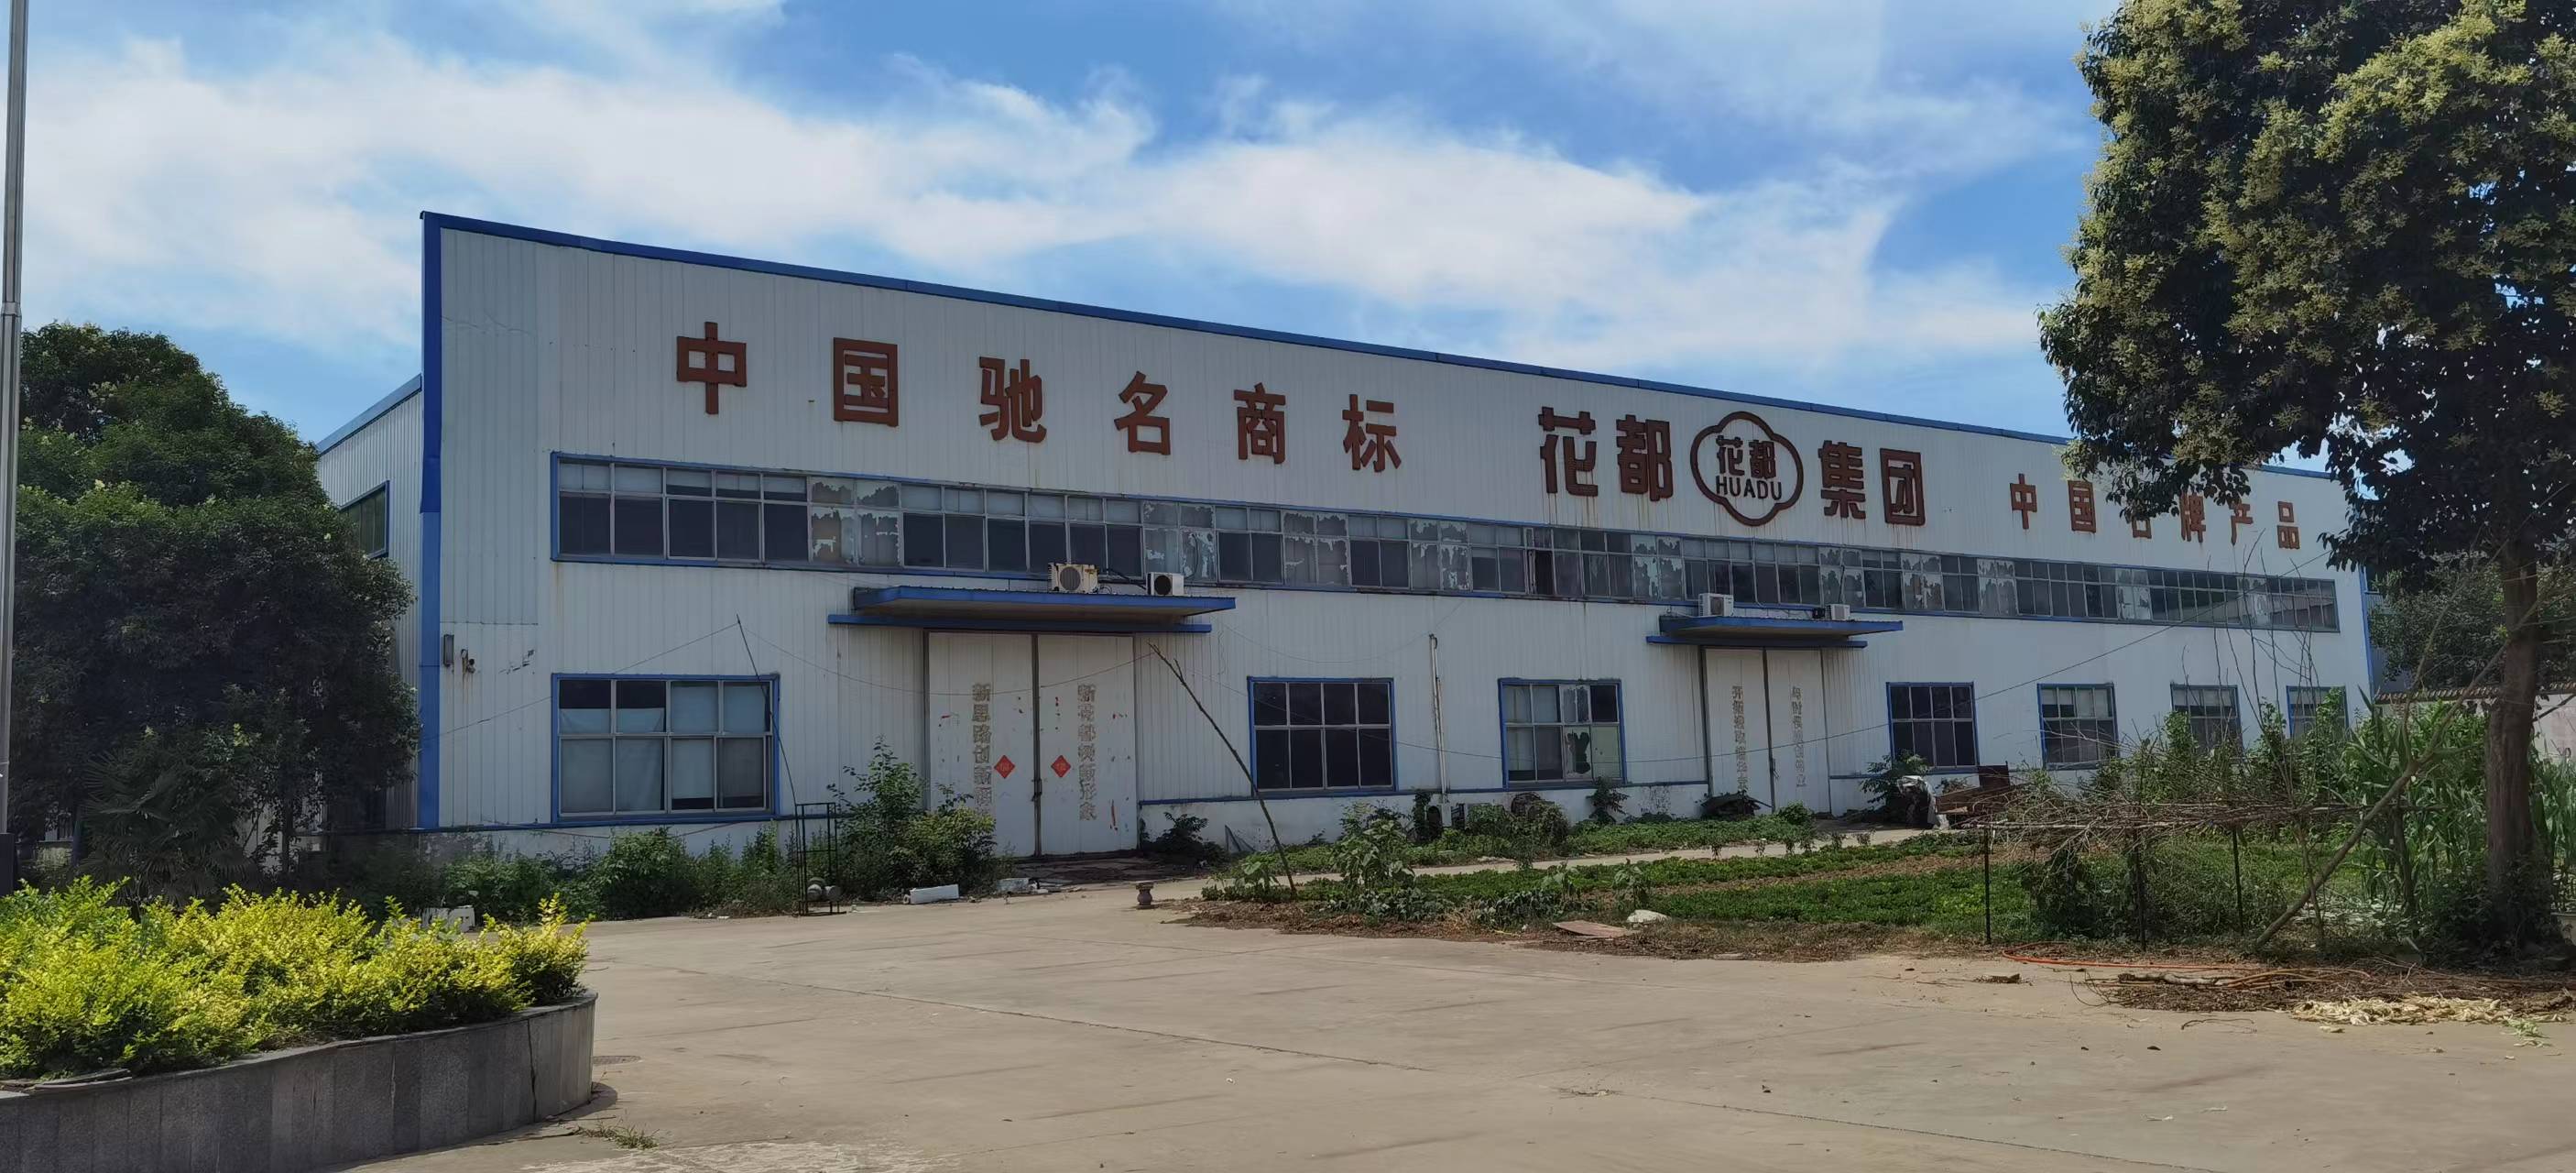 已经停产的花都金框集团，厂房外还留有“中国驰名商标”“中国名牌”的字样  马纪朝 摄